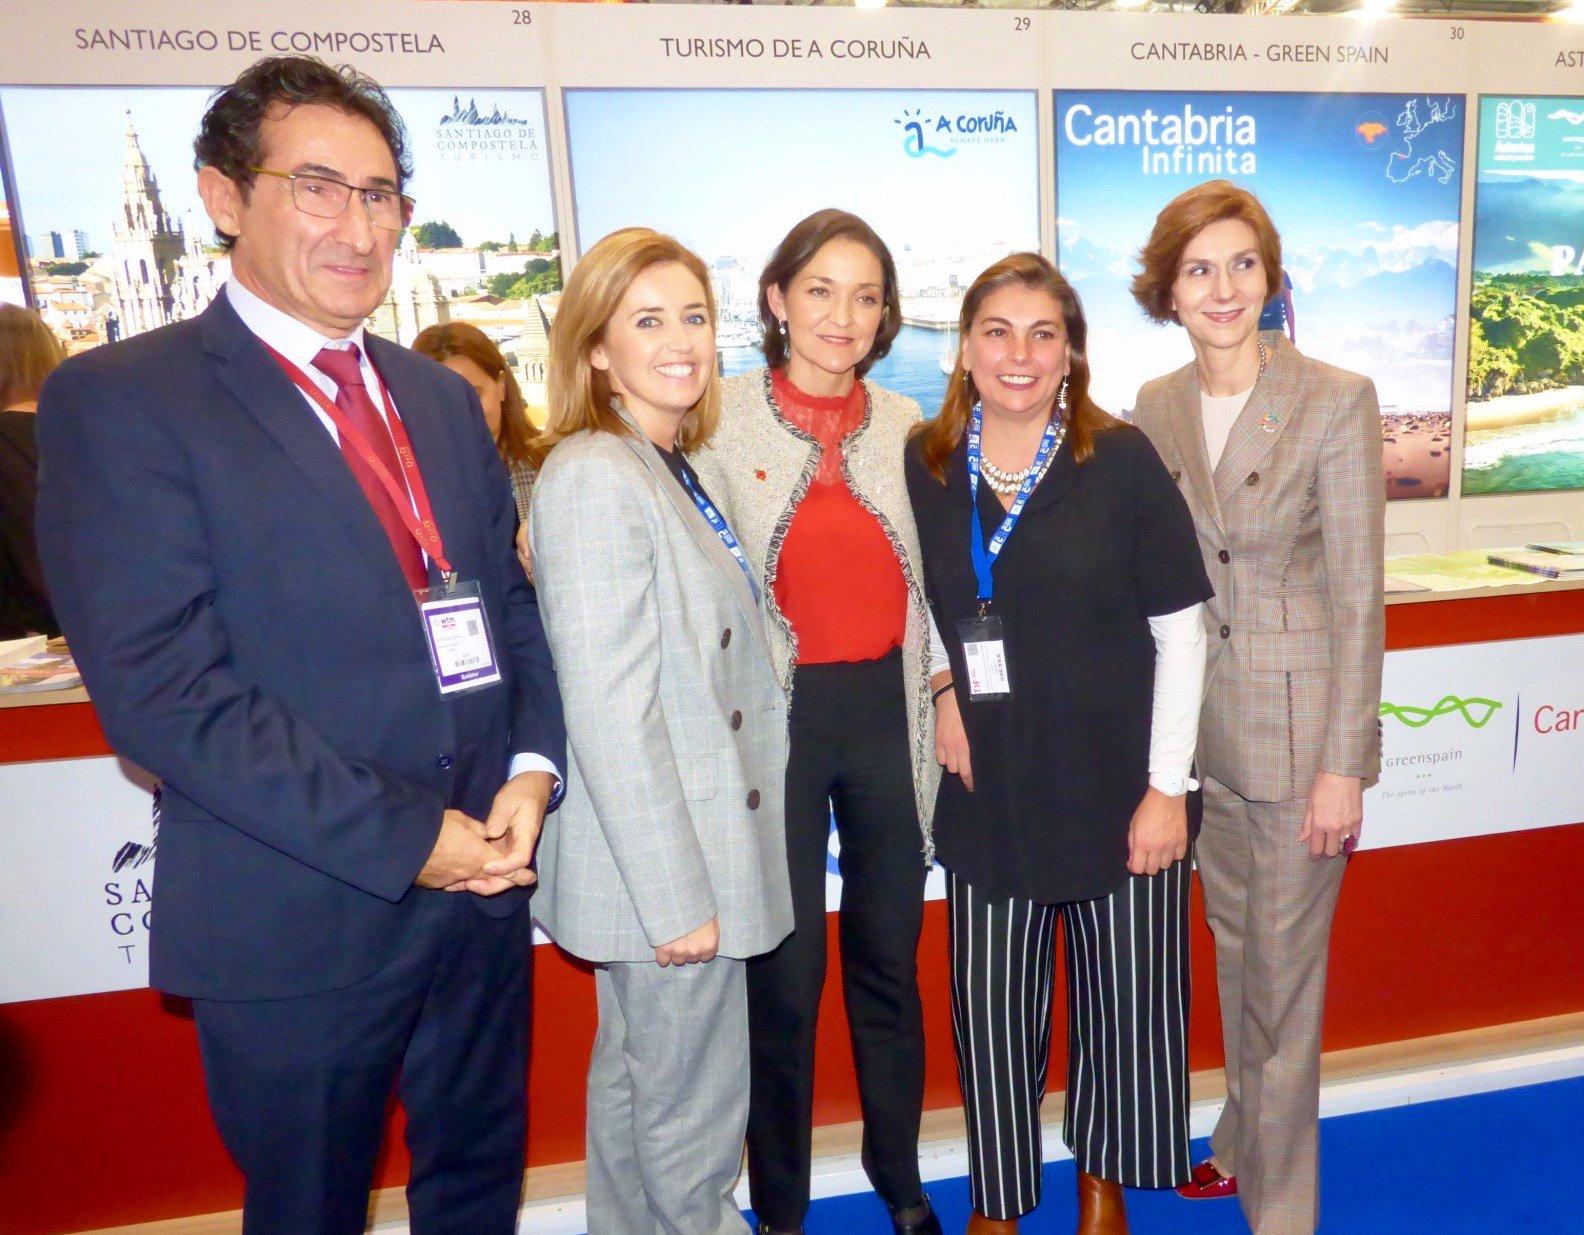 La ministra Reyes Maroto visitó el stand de A Coruña (@CorunaTurismo)